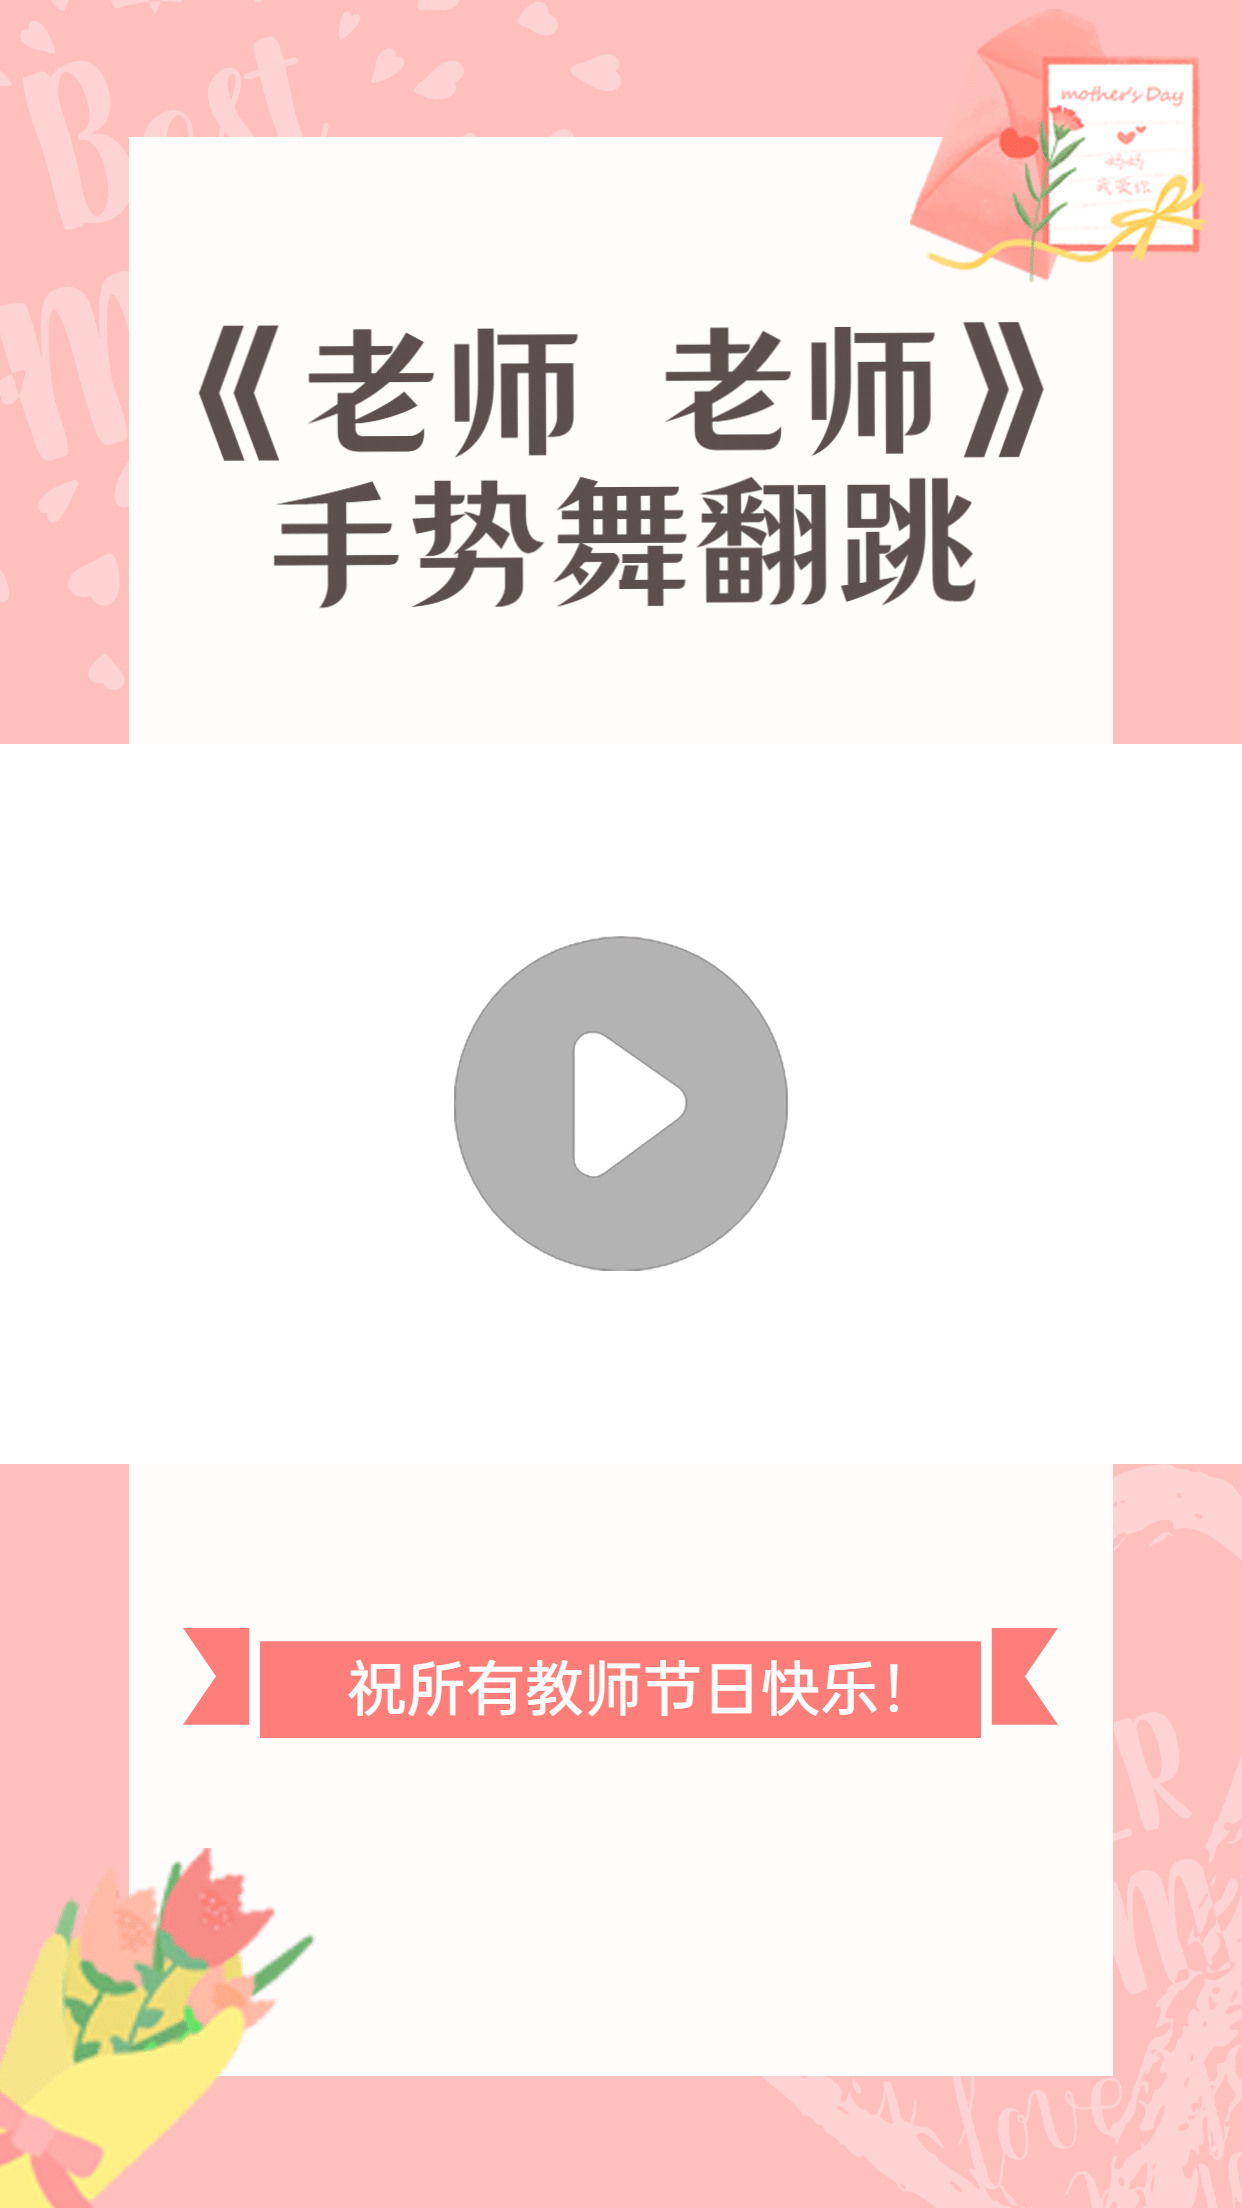 简约温馨教师节祝福短视频边框背景